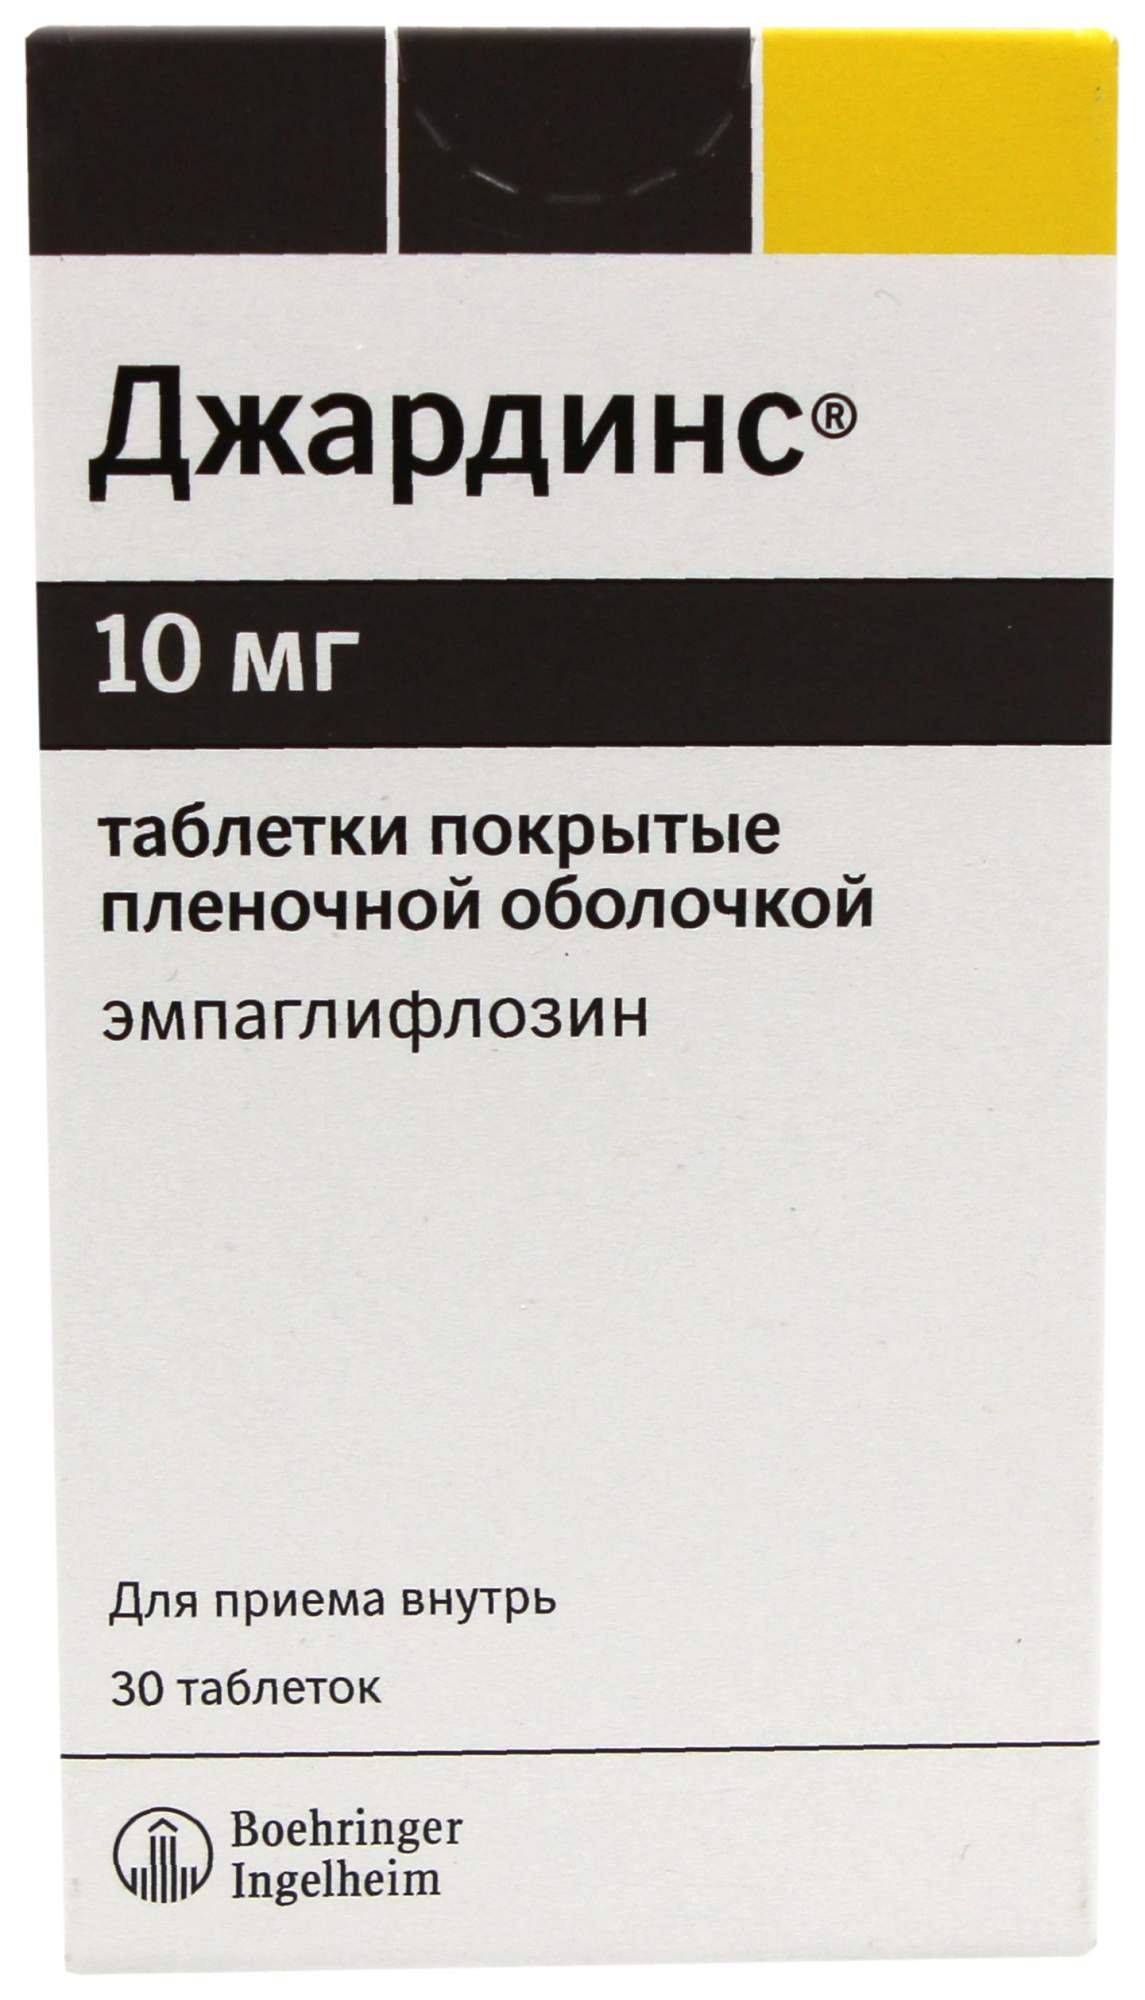 Джардинс таблетки покрытые пленочной оболочкой 10 мг 30 шт. - купить в интернет-магазинах, цены на Мегамаркет | лекарственные препараты при диабете